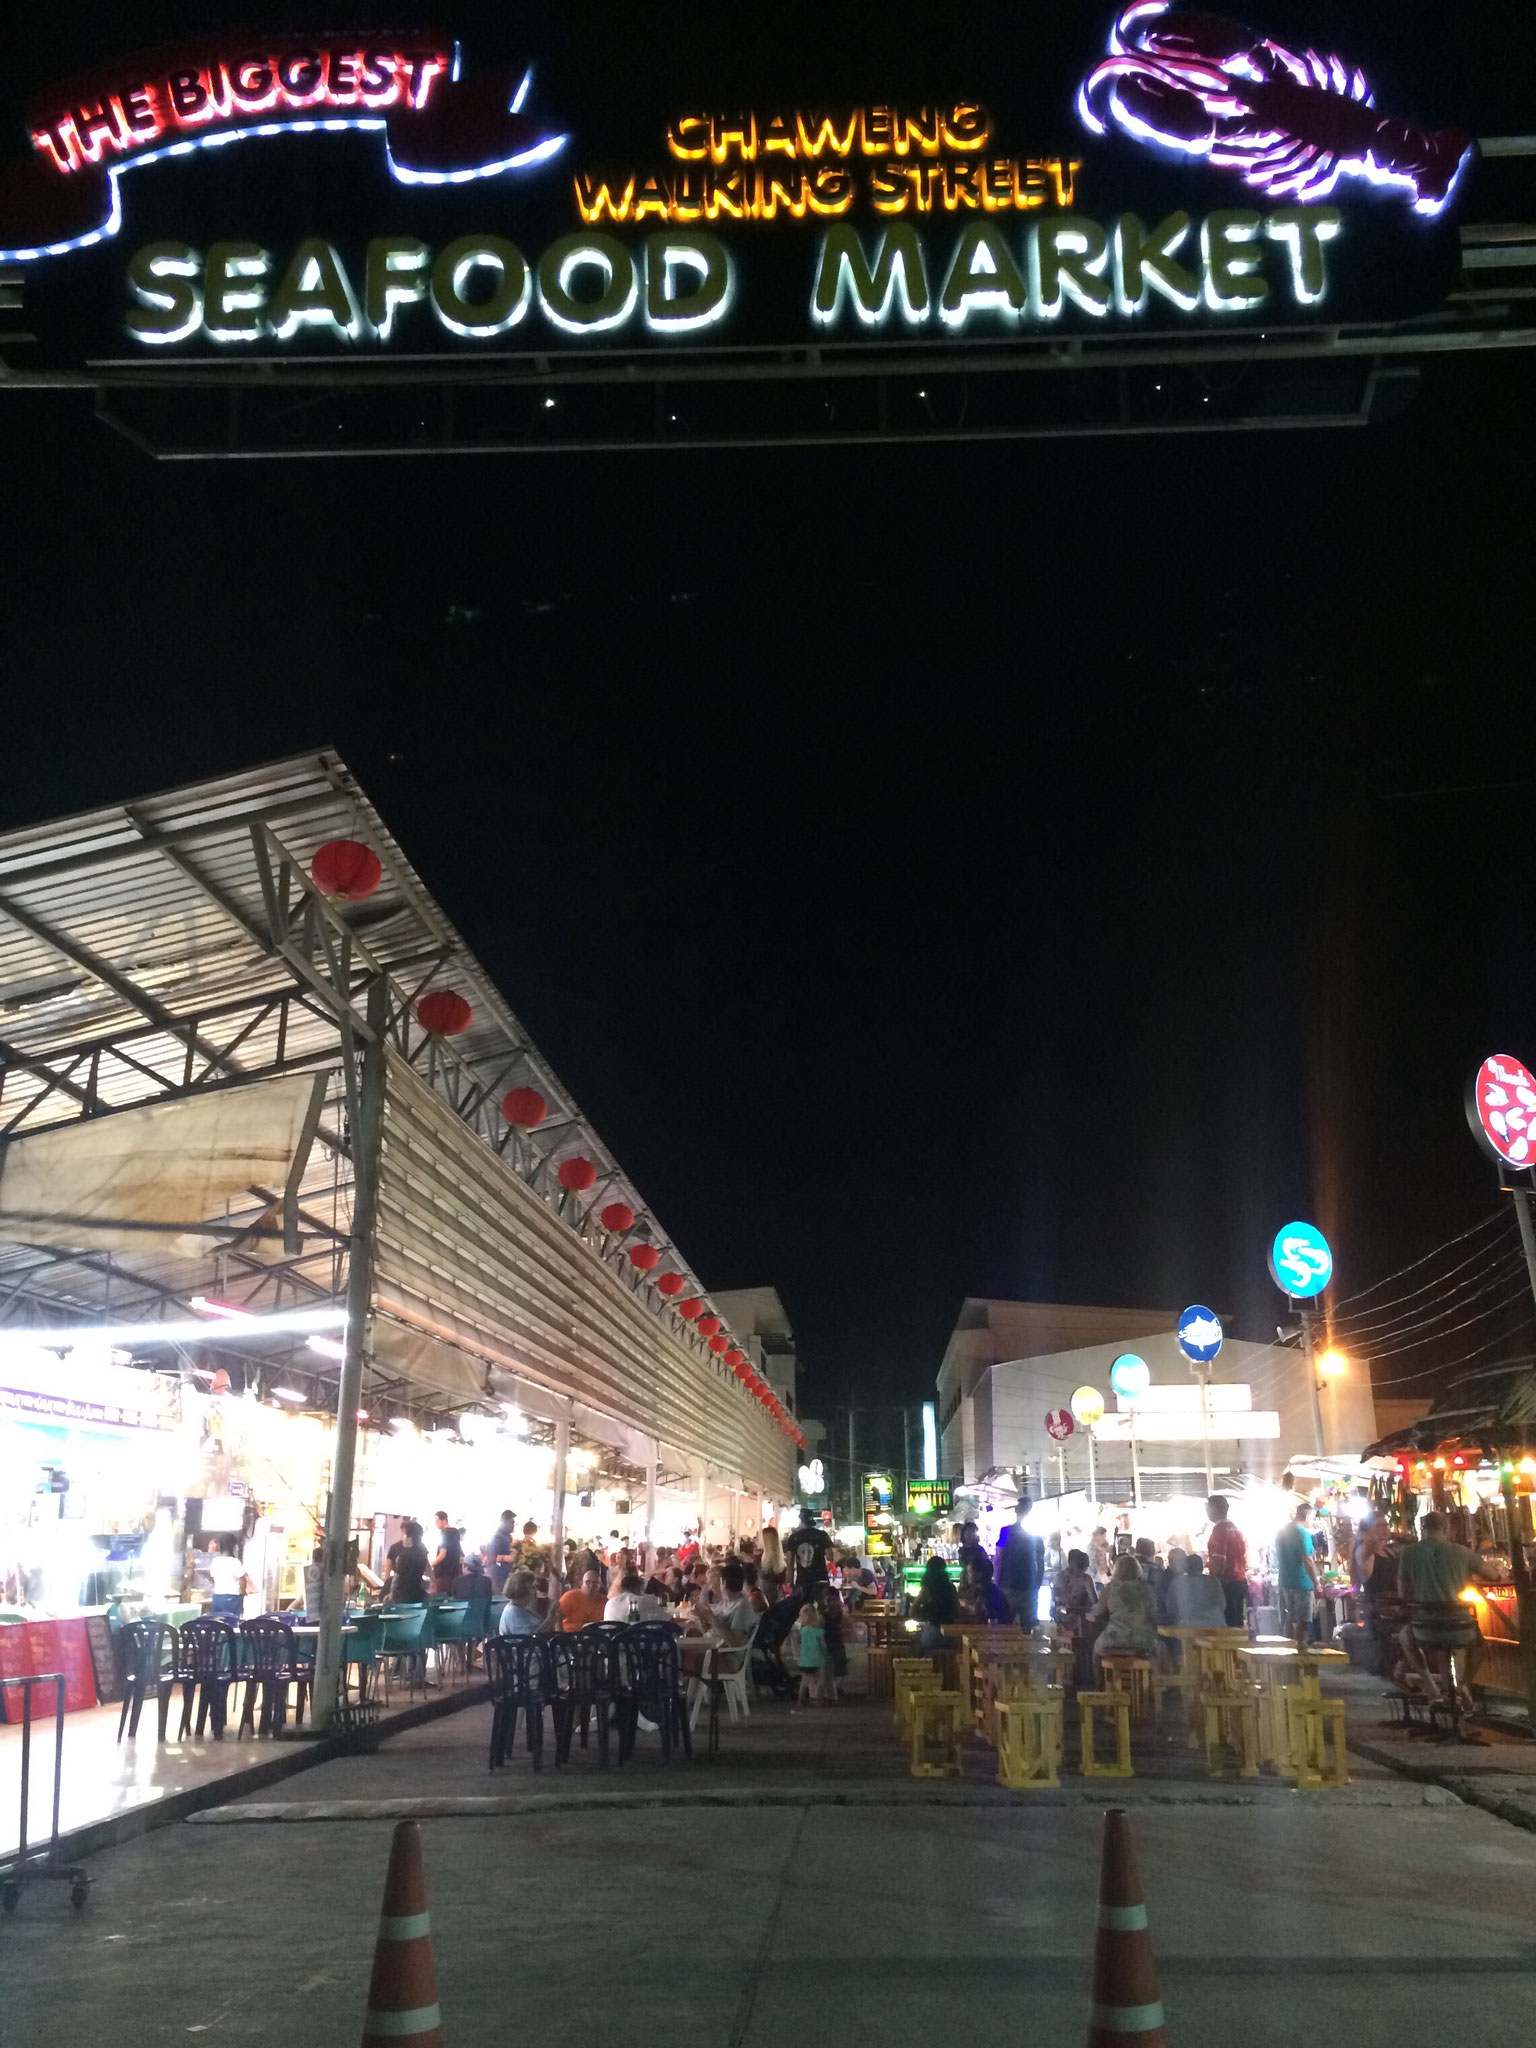 Ist eigentlich kein "Seafood Market", sondern ein Streetfood Market ;)